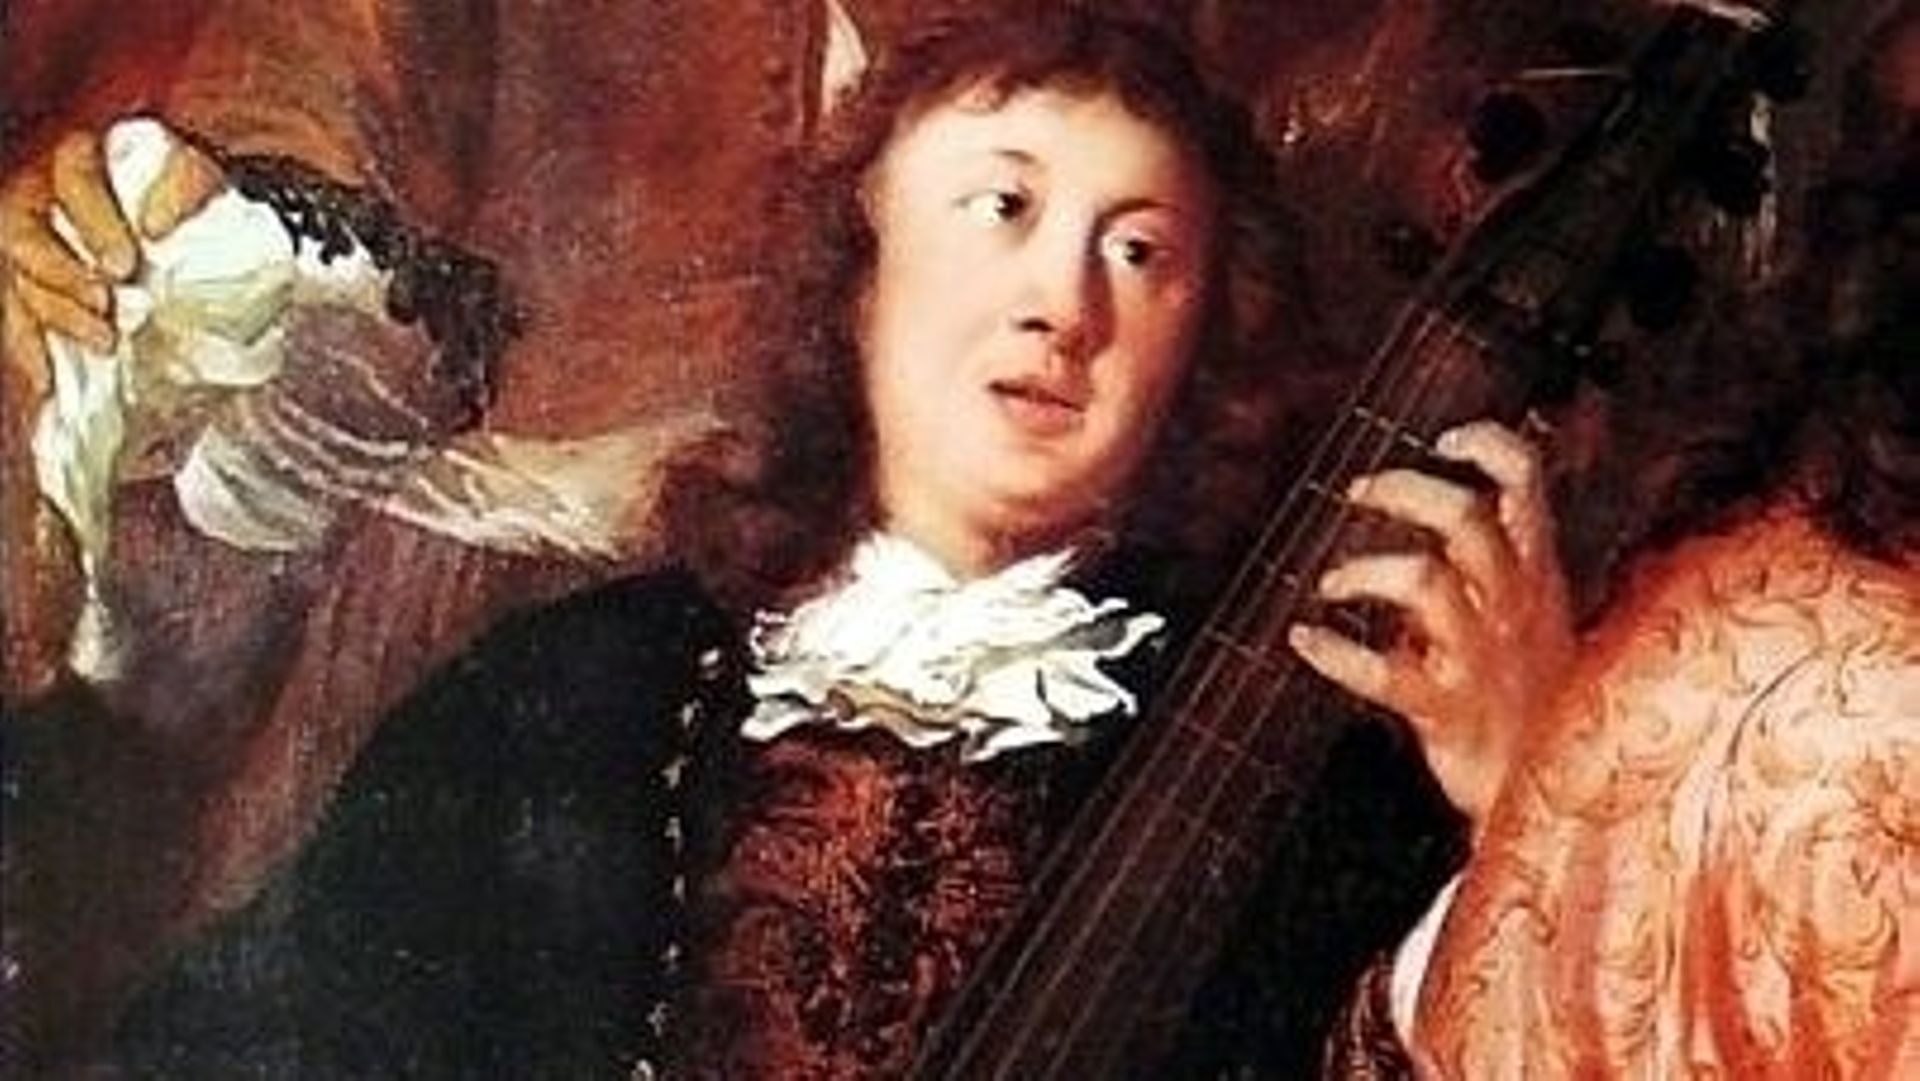 Portrait présumé de Buxtehude, détail de "Scène de musique dans un intérieur", par Johannes Voorhout